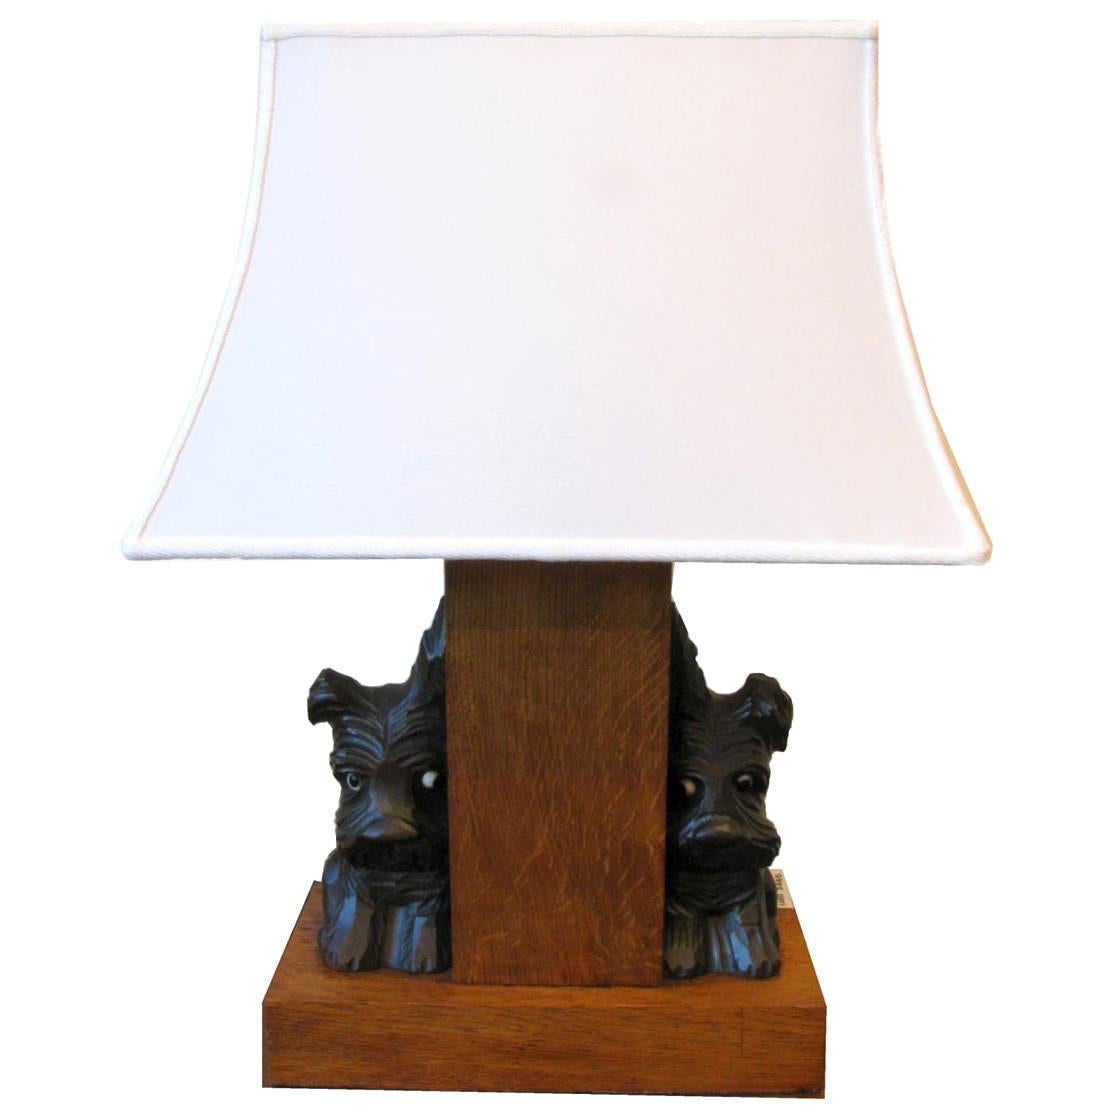 Scottish Terrier Dog Figures Oak  Rectangular Table Lamp from France